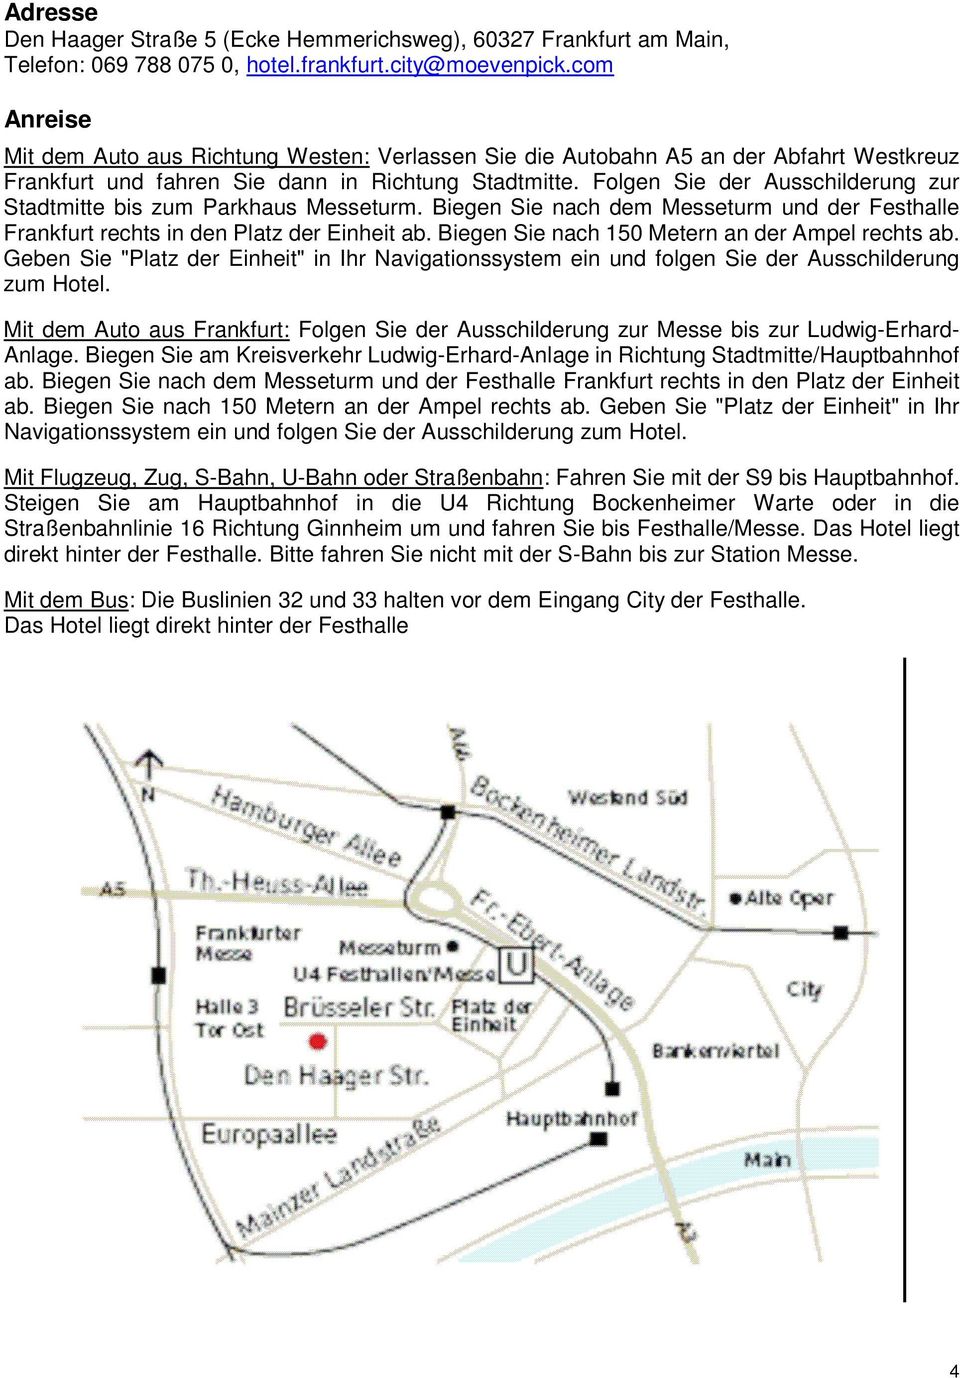 Folgen Sie der Ausschilderung zur Stadtmitte bis zum Parkhaus Messeturm. Biegen Sie nach dem Messeturm und der Festhalle Frankfurt rechts in den Platz der Einheit ab.